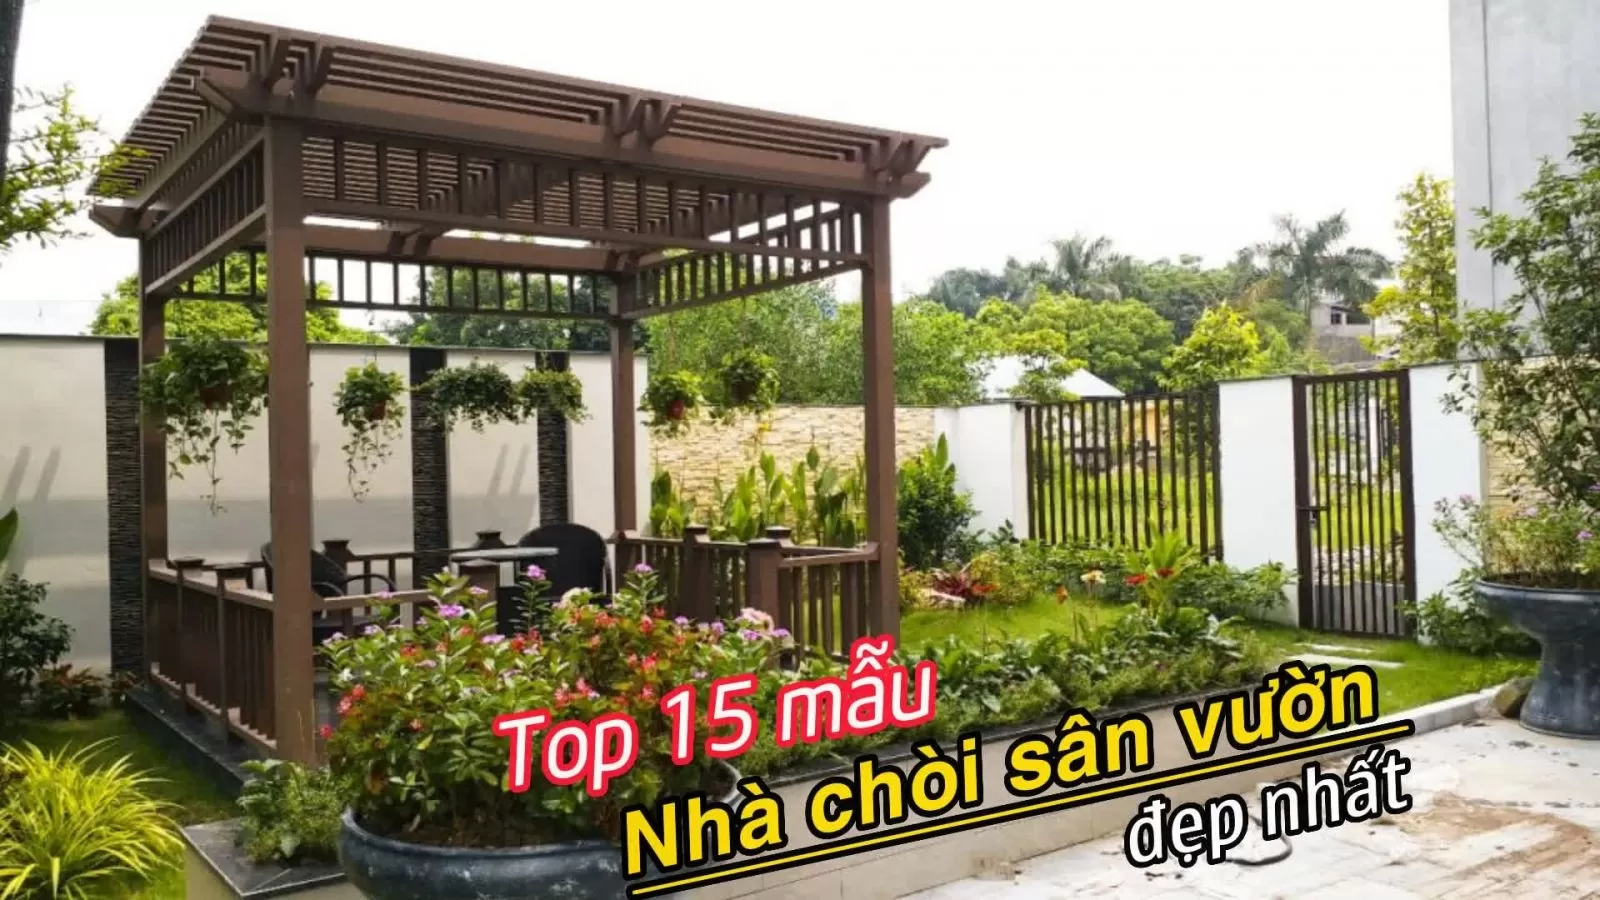 Top 15 Mẫu Nhà Chòi Sân Vườn Đẹp, Thiết Kế Hiện Đại, Độc Đáo